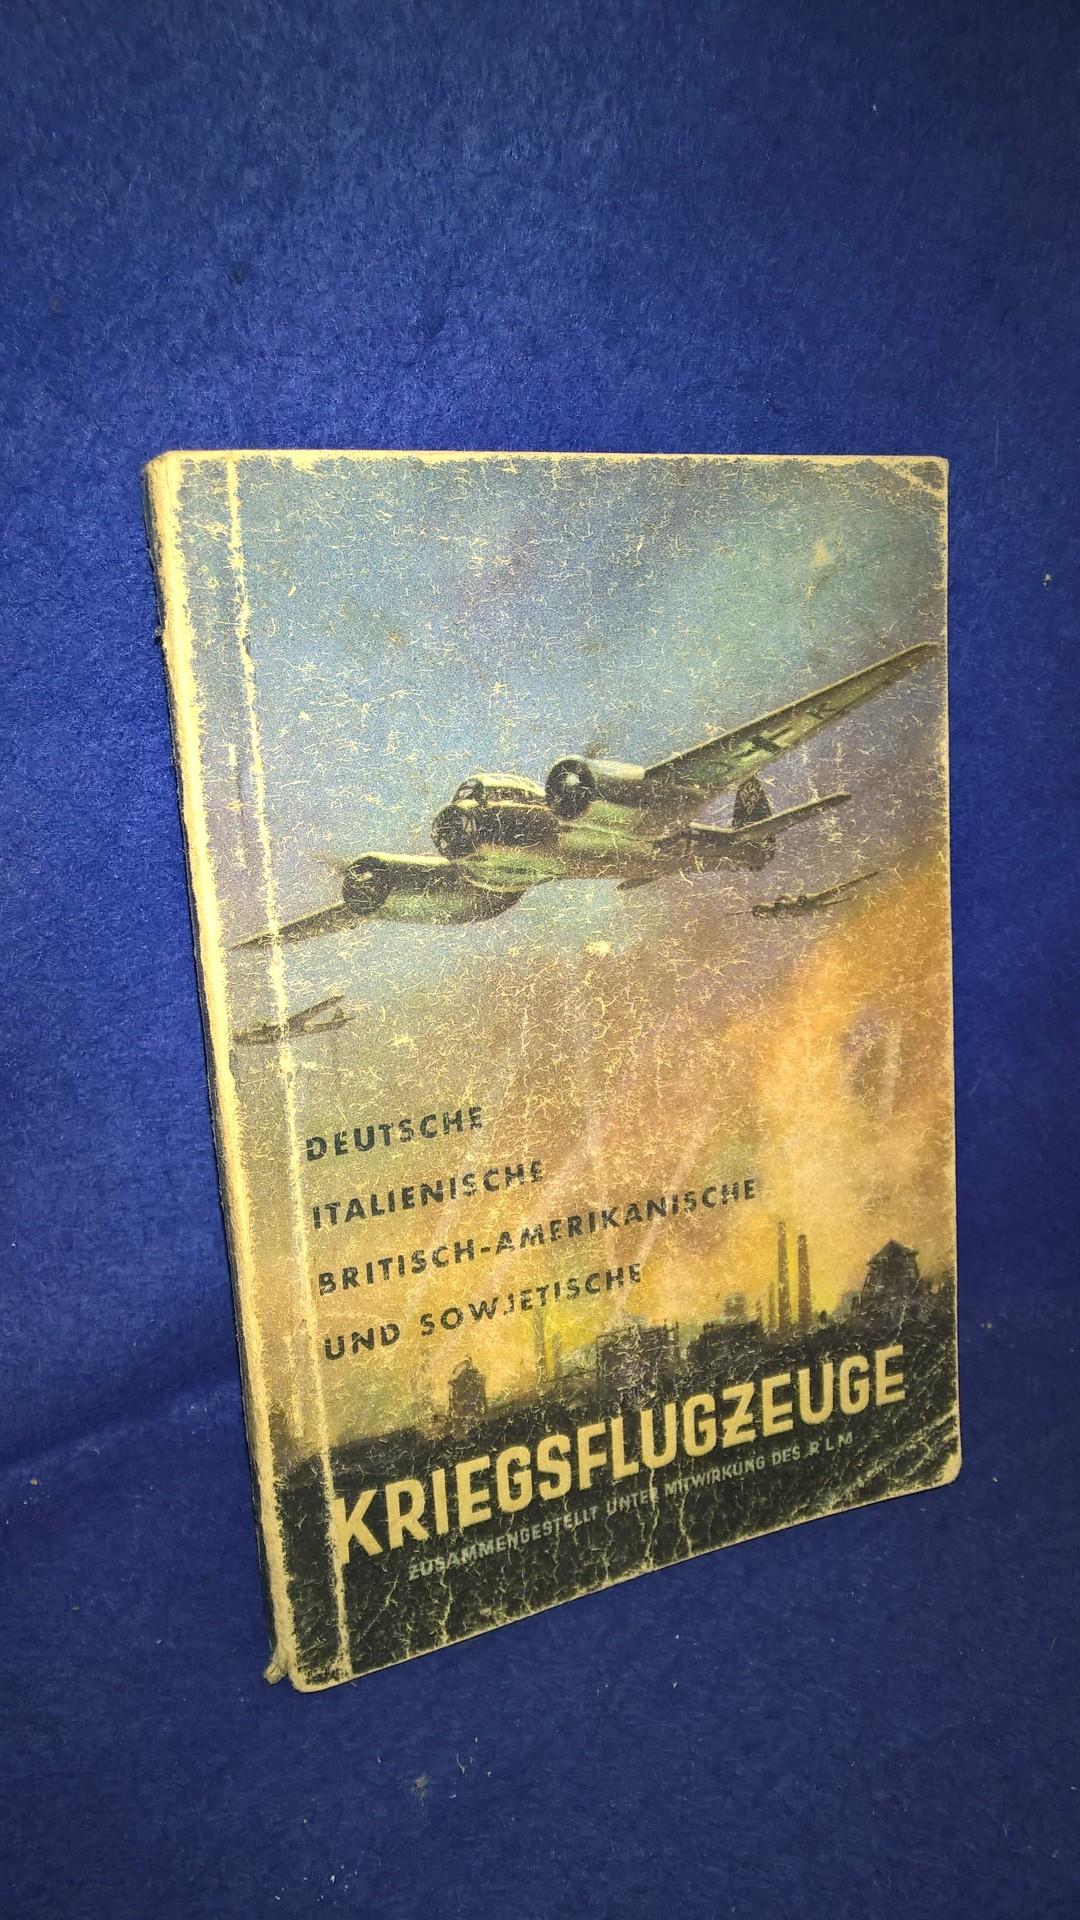 Deutsche, Italienische britisch-amerikanische und sowjetische Kriegsflugzeuge. Ansprache, Erkennen, Bewaffnung usw. Ausgabe Sommer 1942.